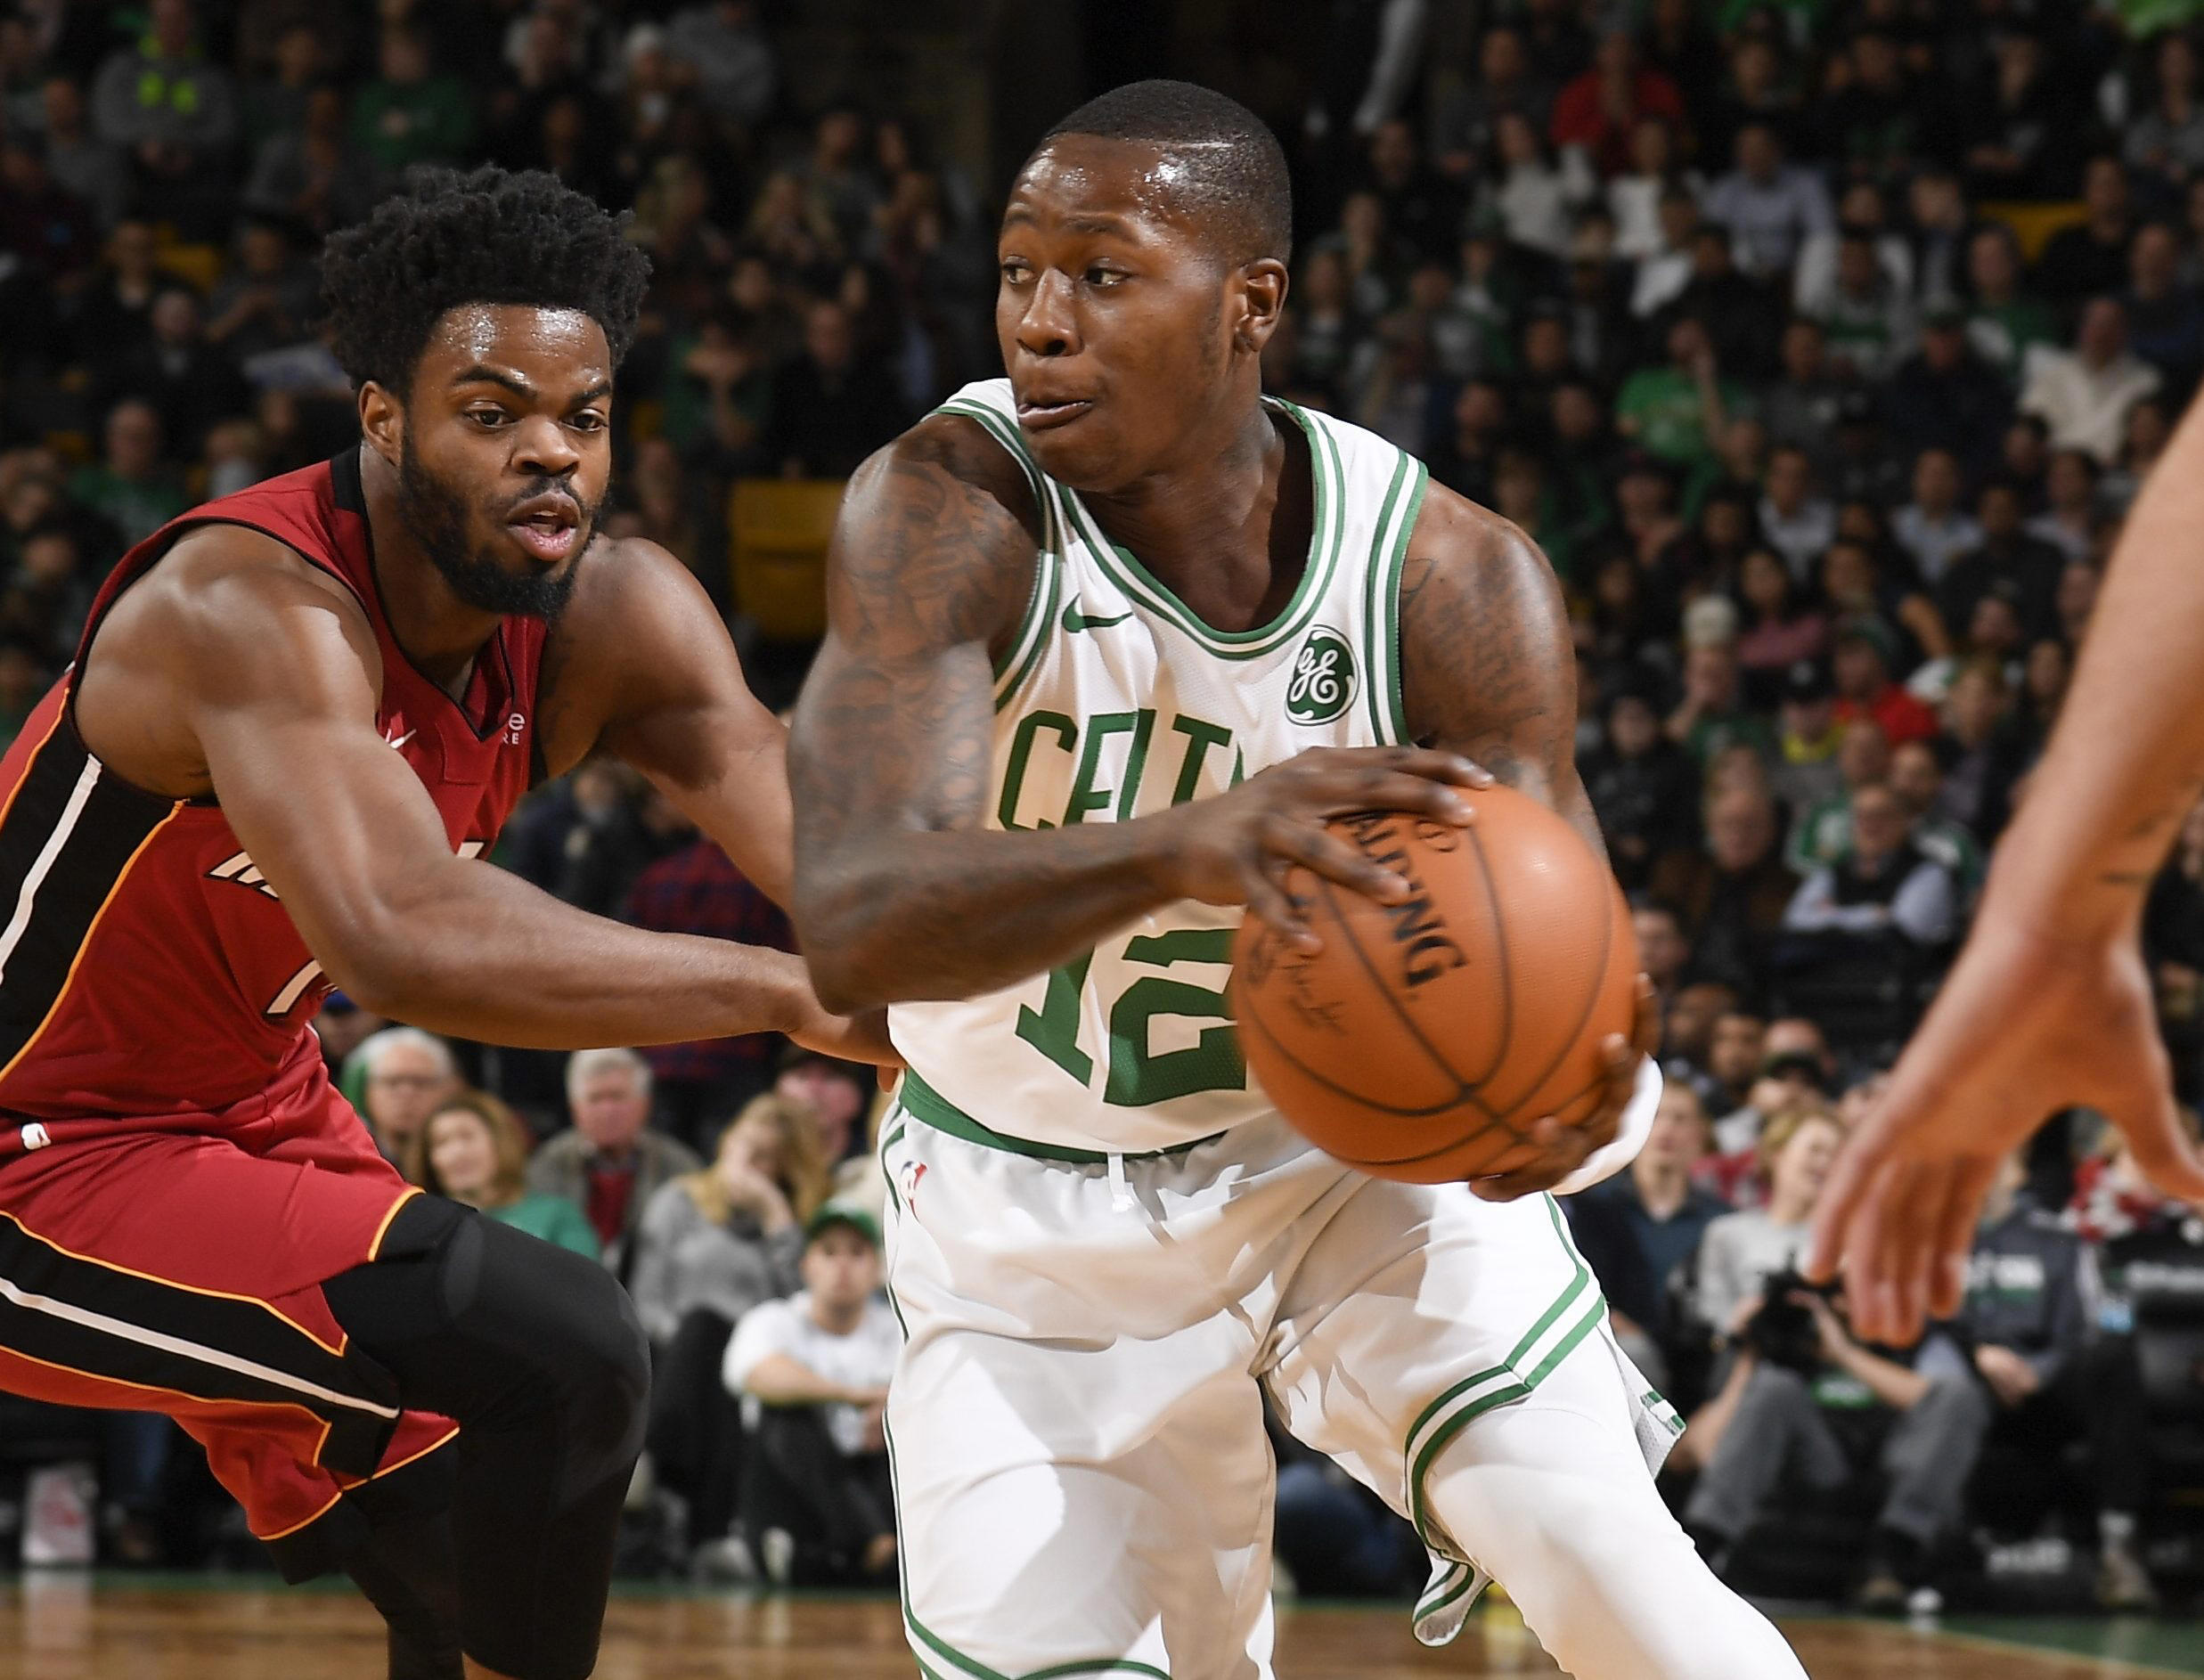 The Boston Celtics defeat the Miami Heat 110-106 in classic rivalry matchup